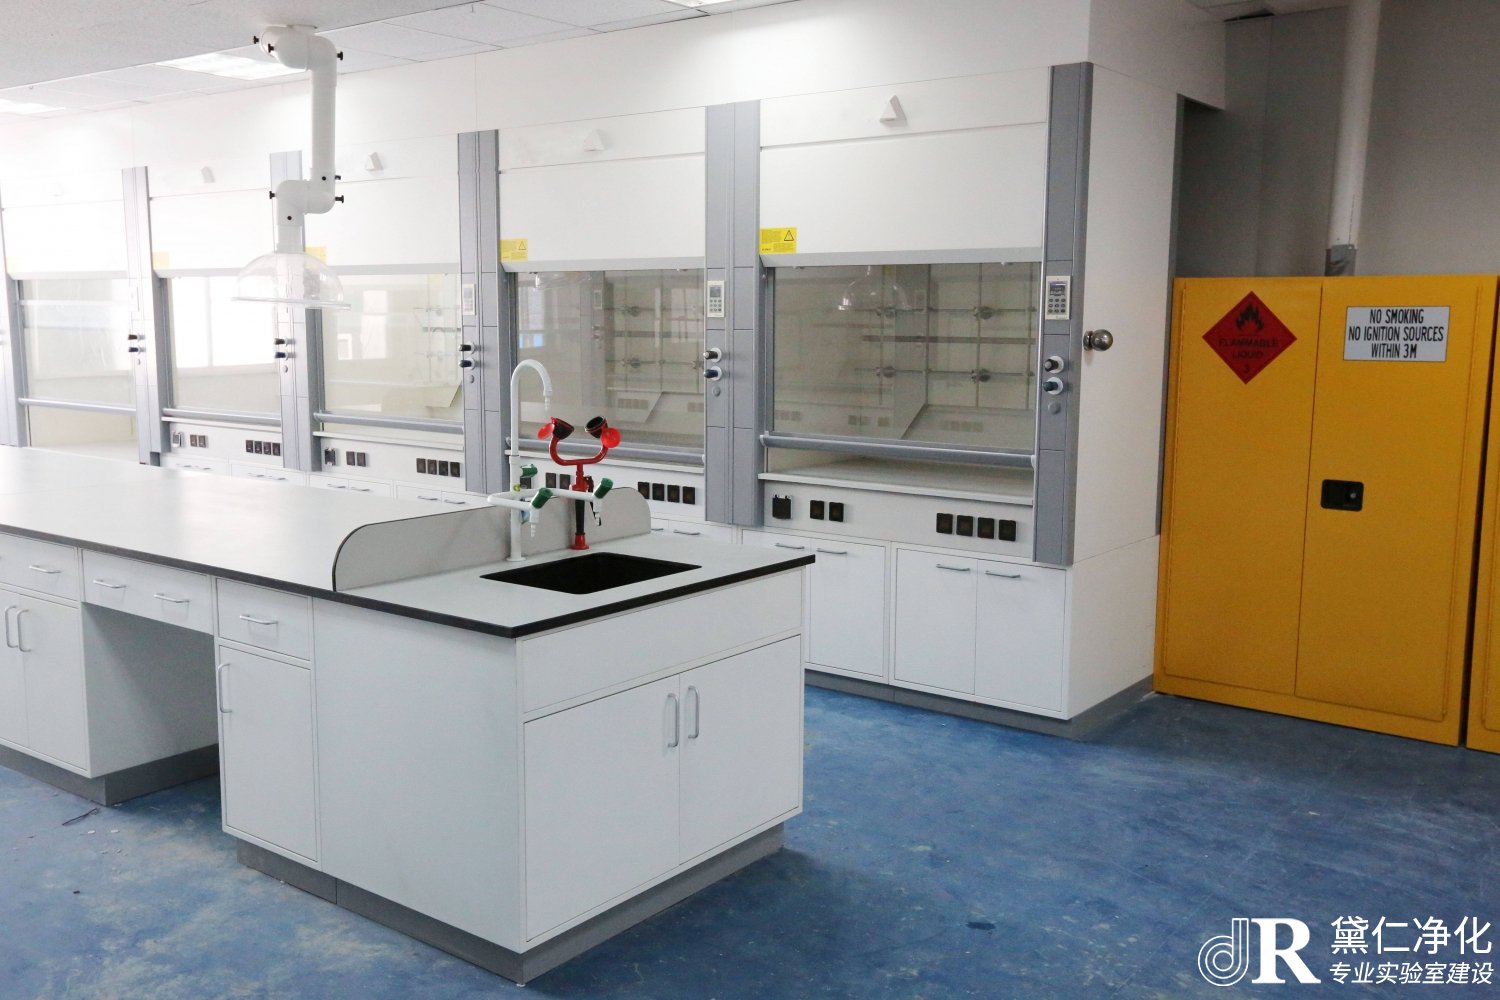 选择适合的上海实验室装修公司很重要